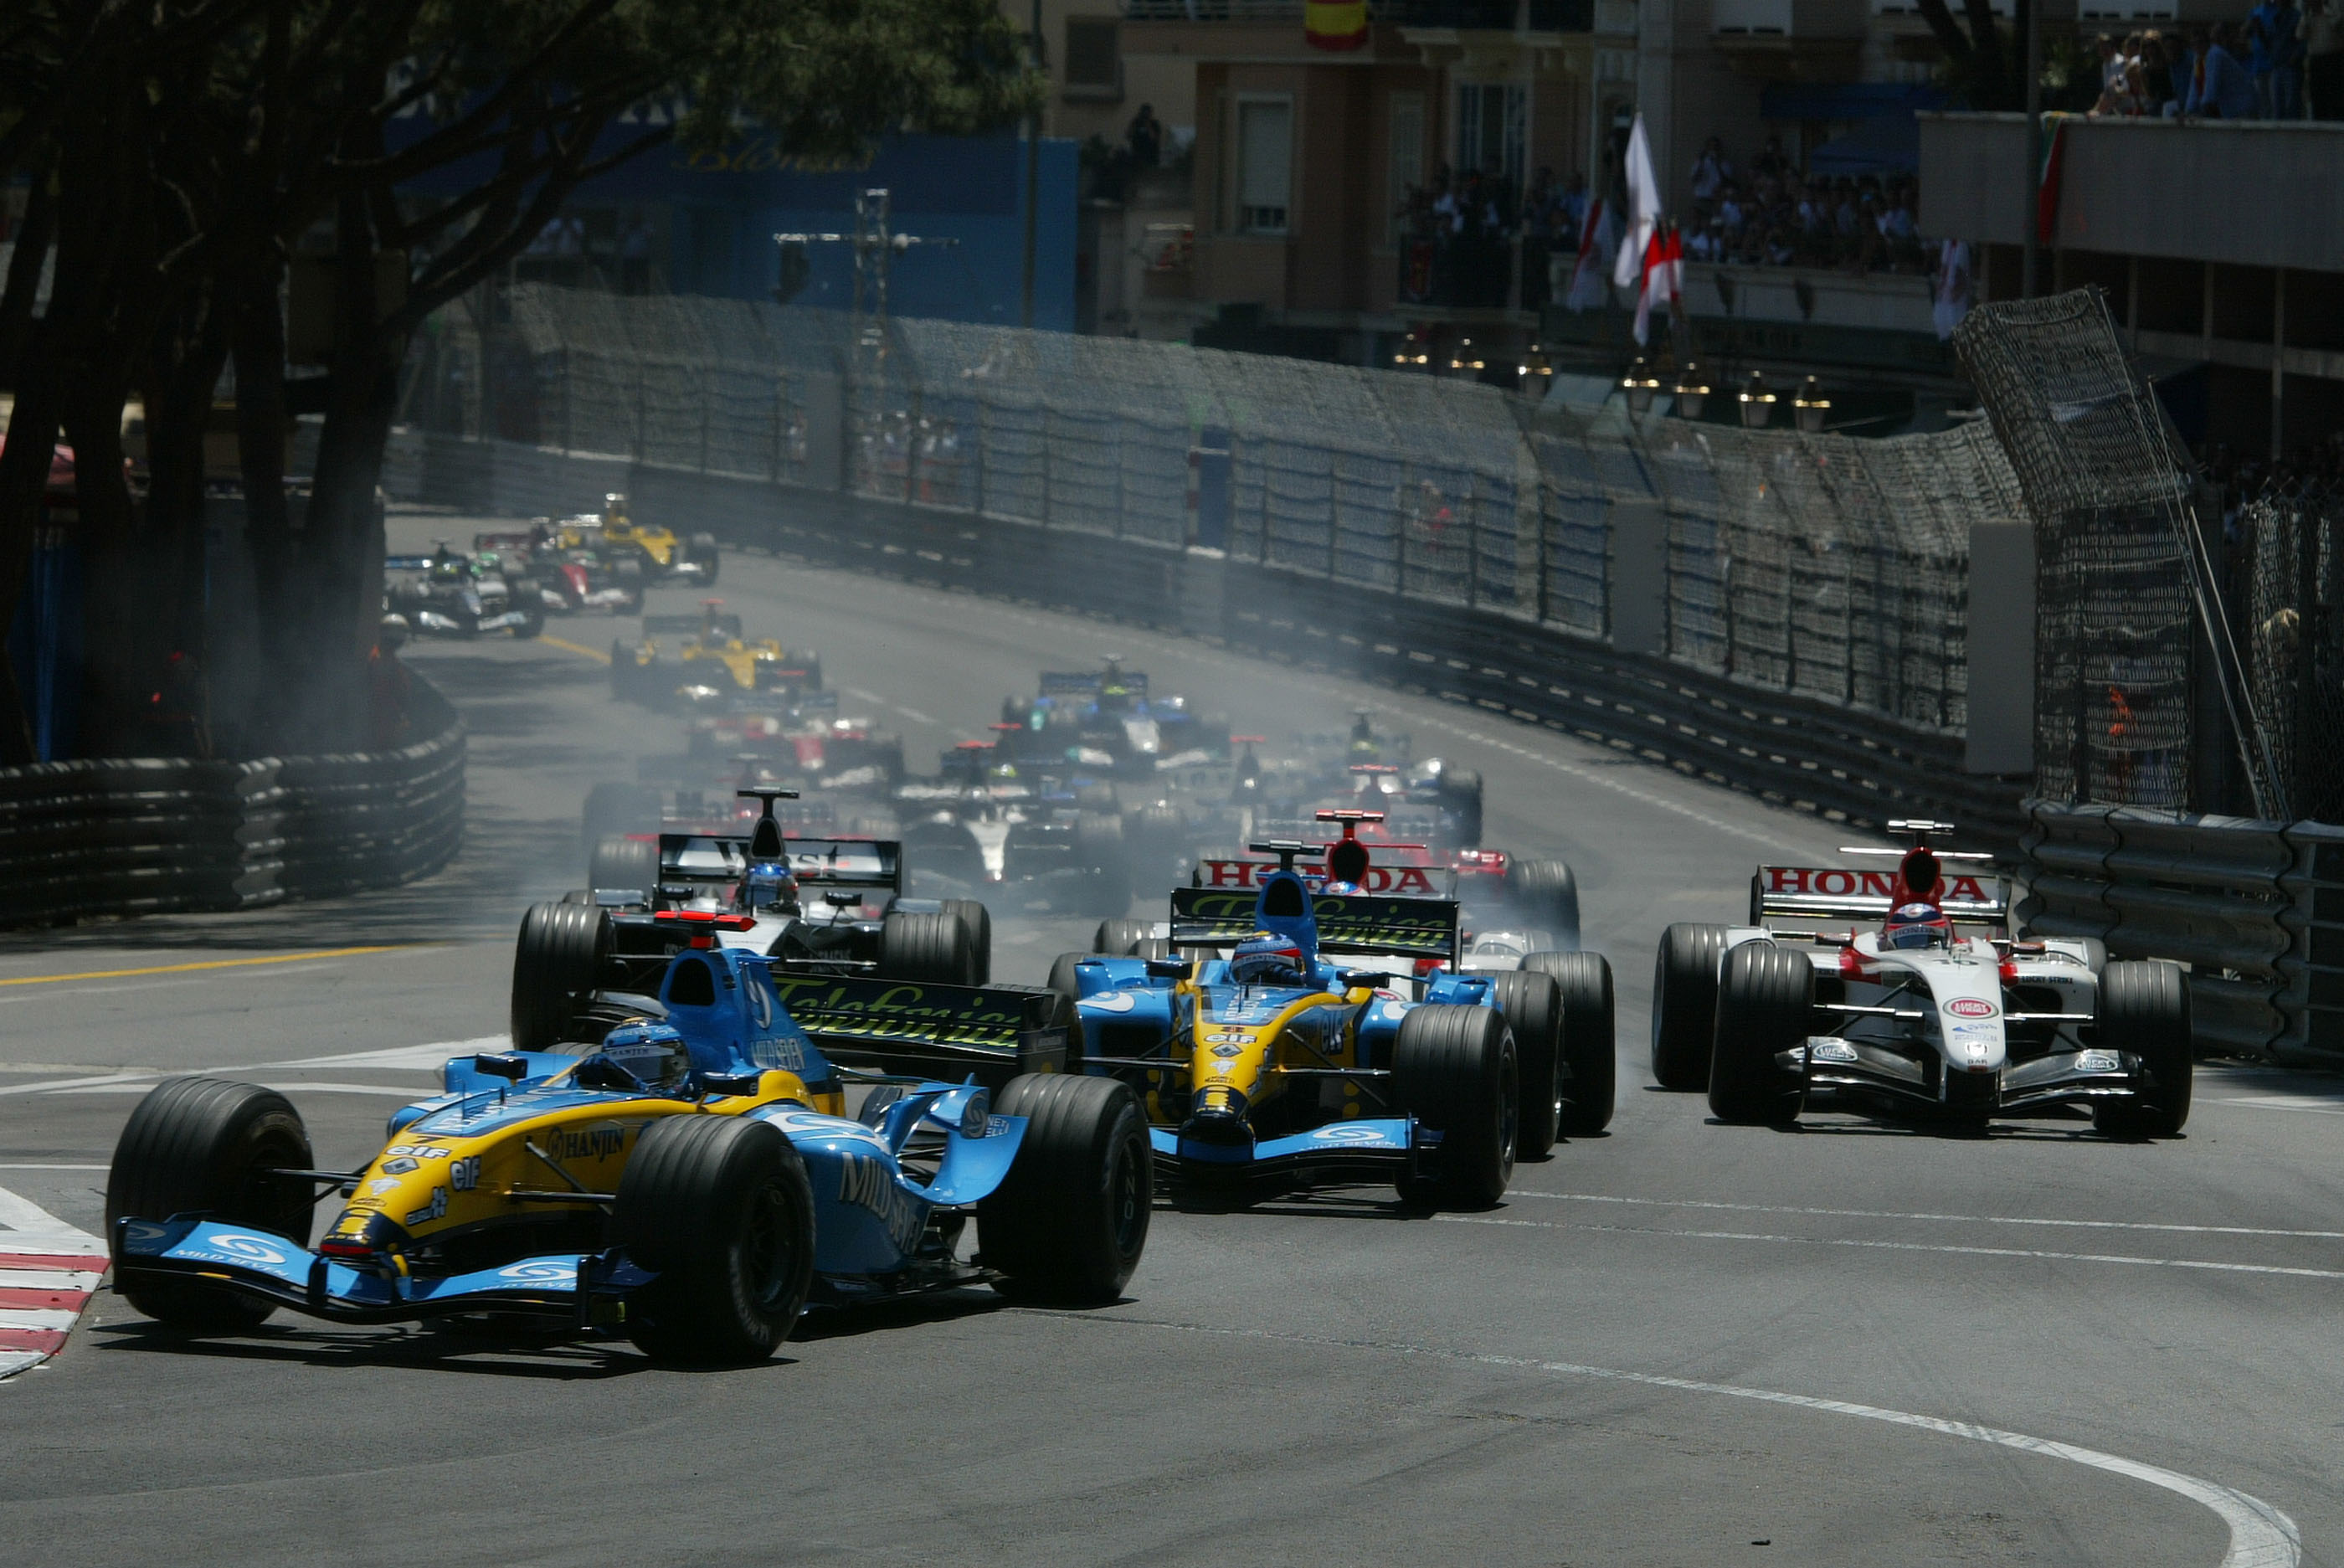 Monaco Grand Prix 2004